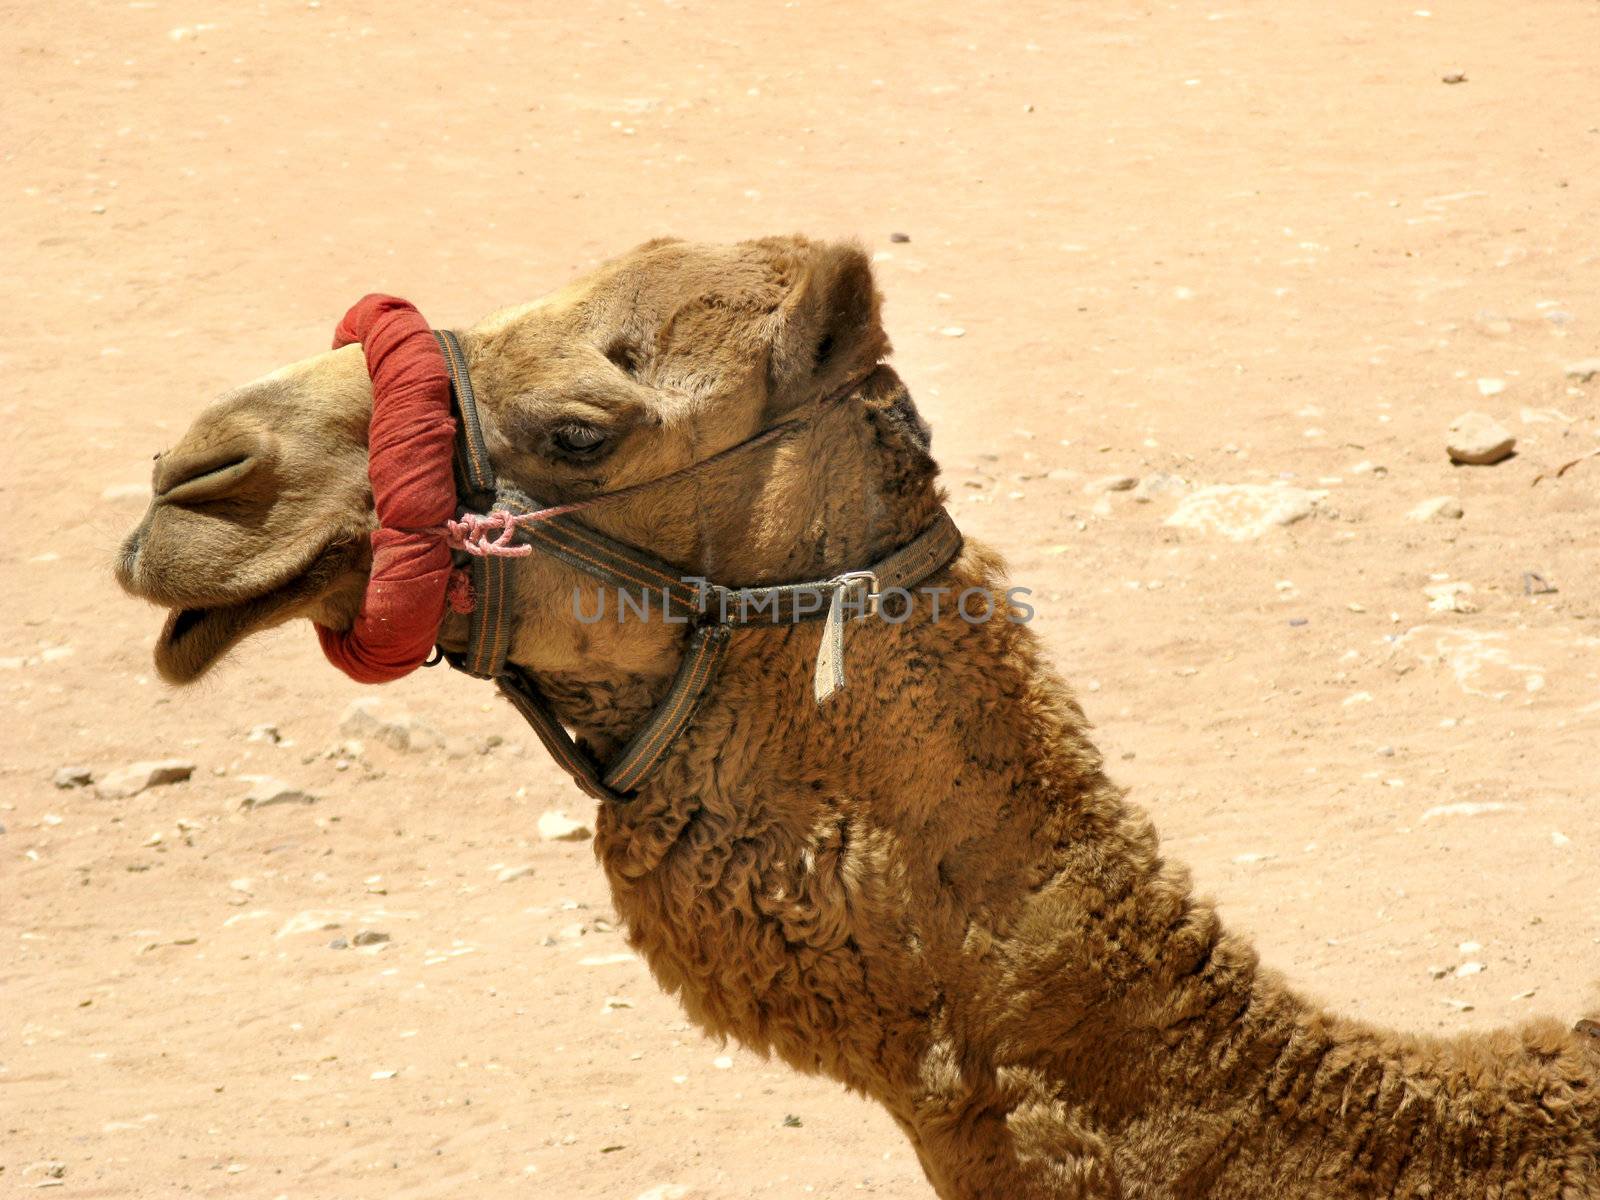 Camel profile portrait by vintrom